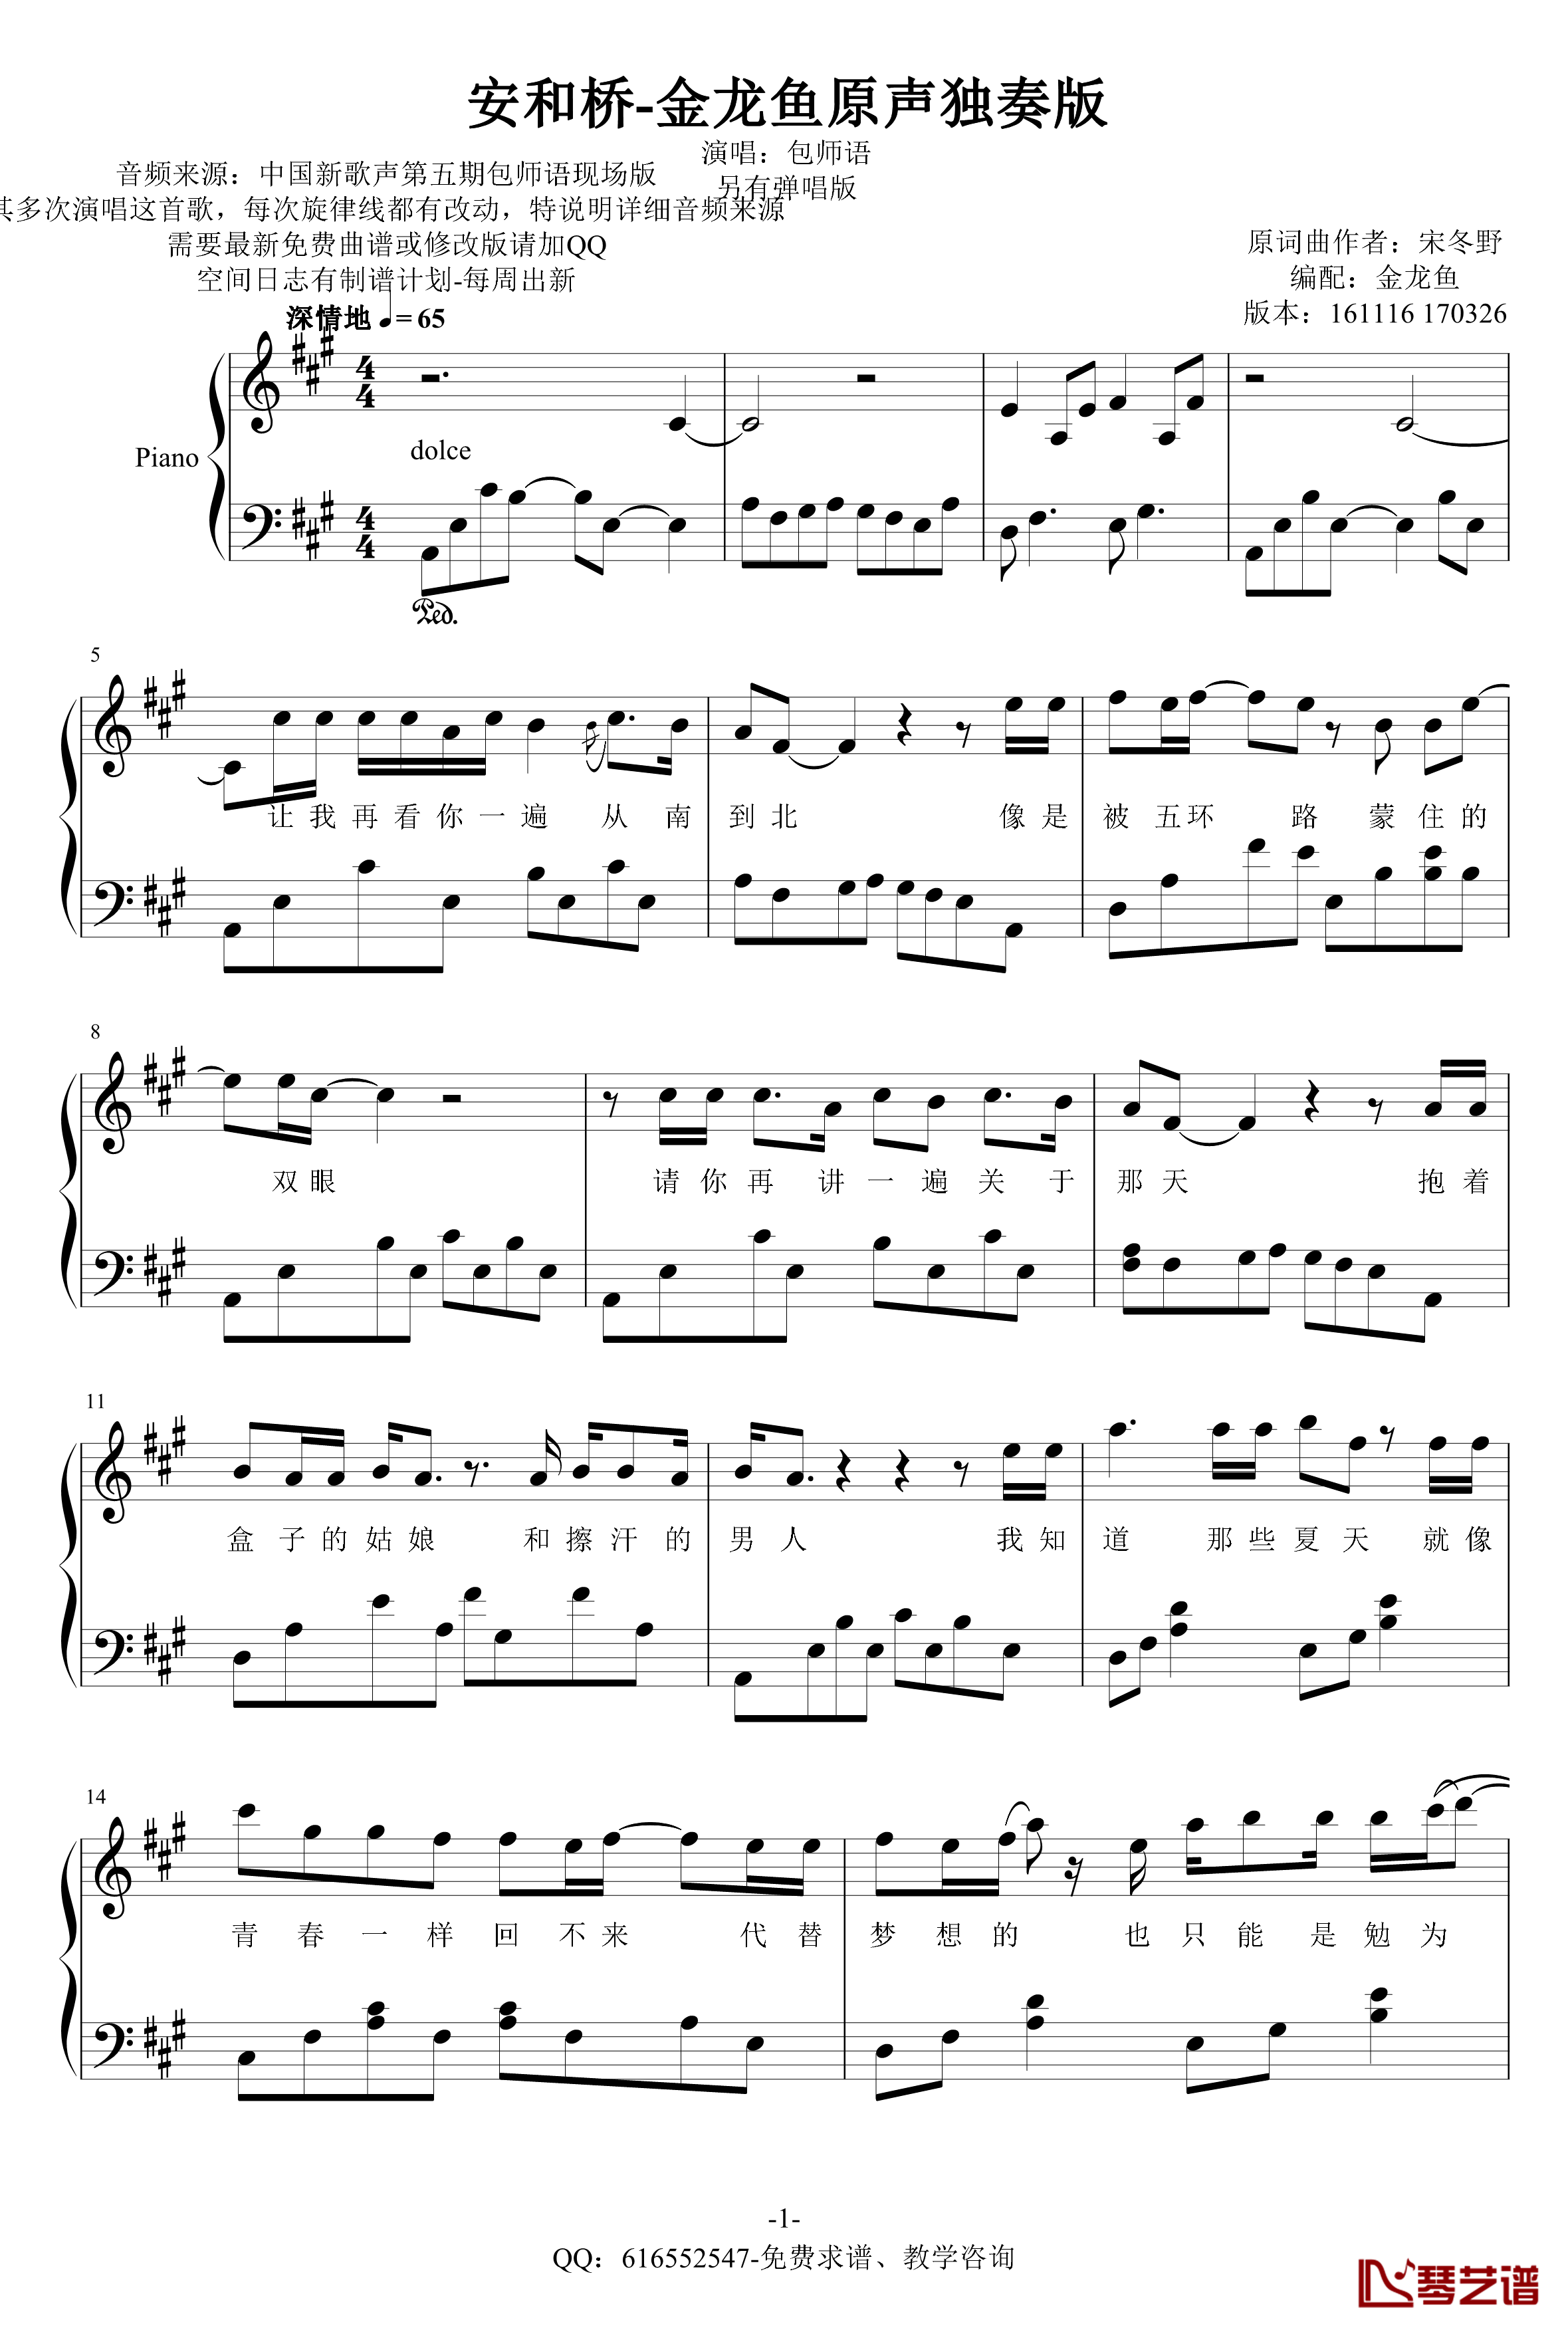 安和桥钢琴谱-金龙鱼原声独奏版170326-包师语1